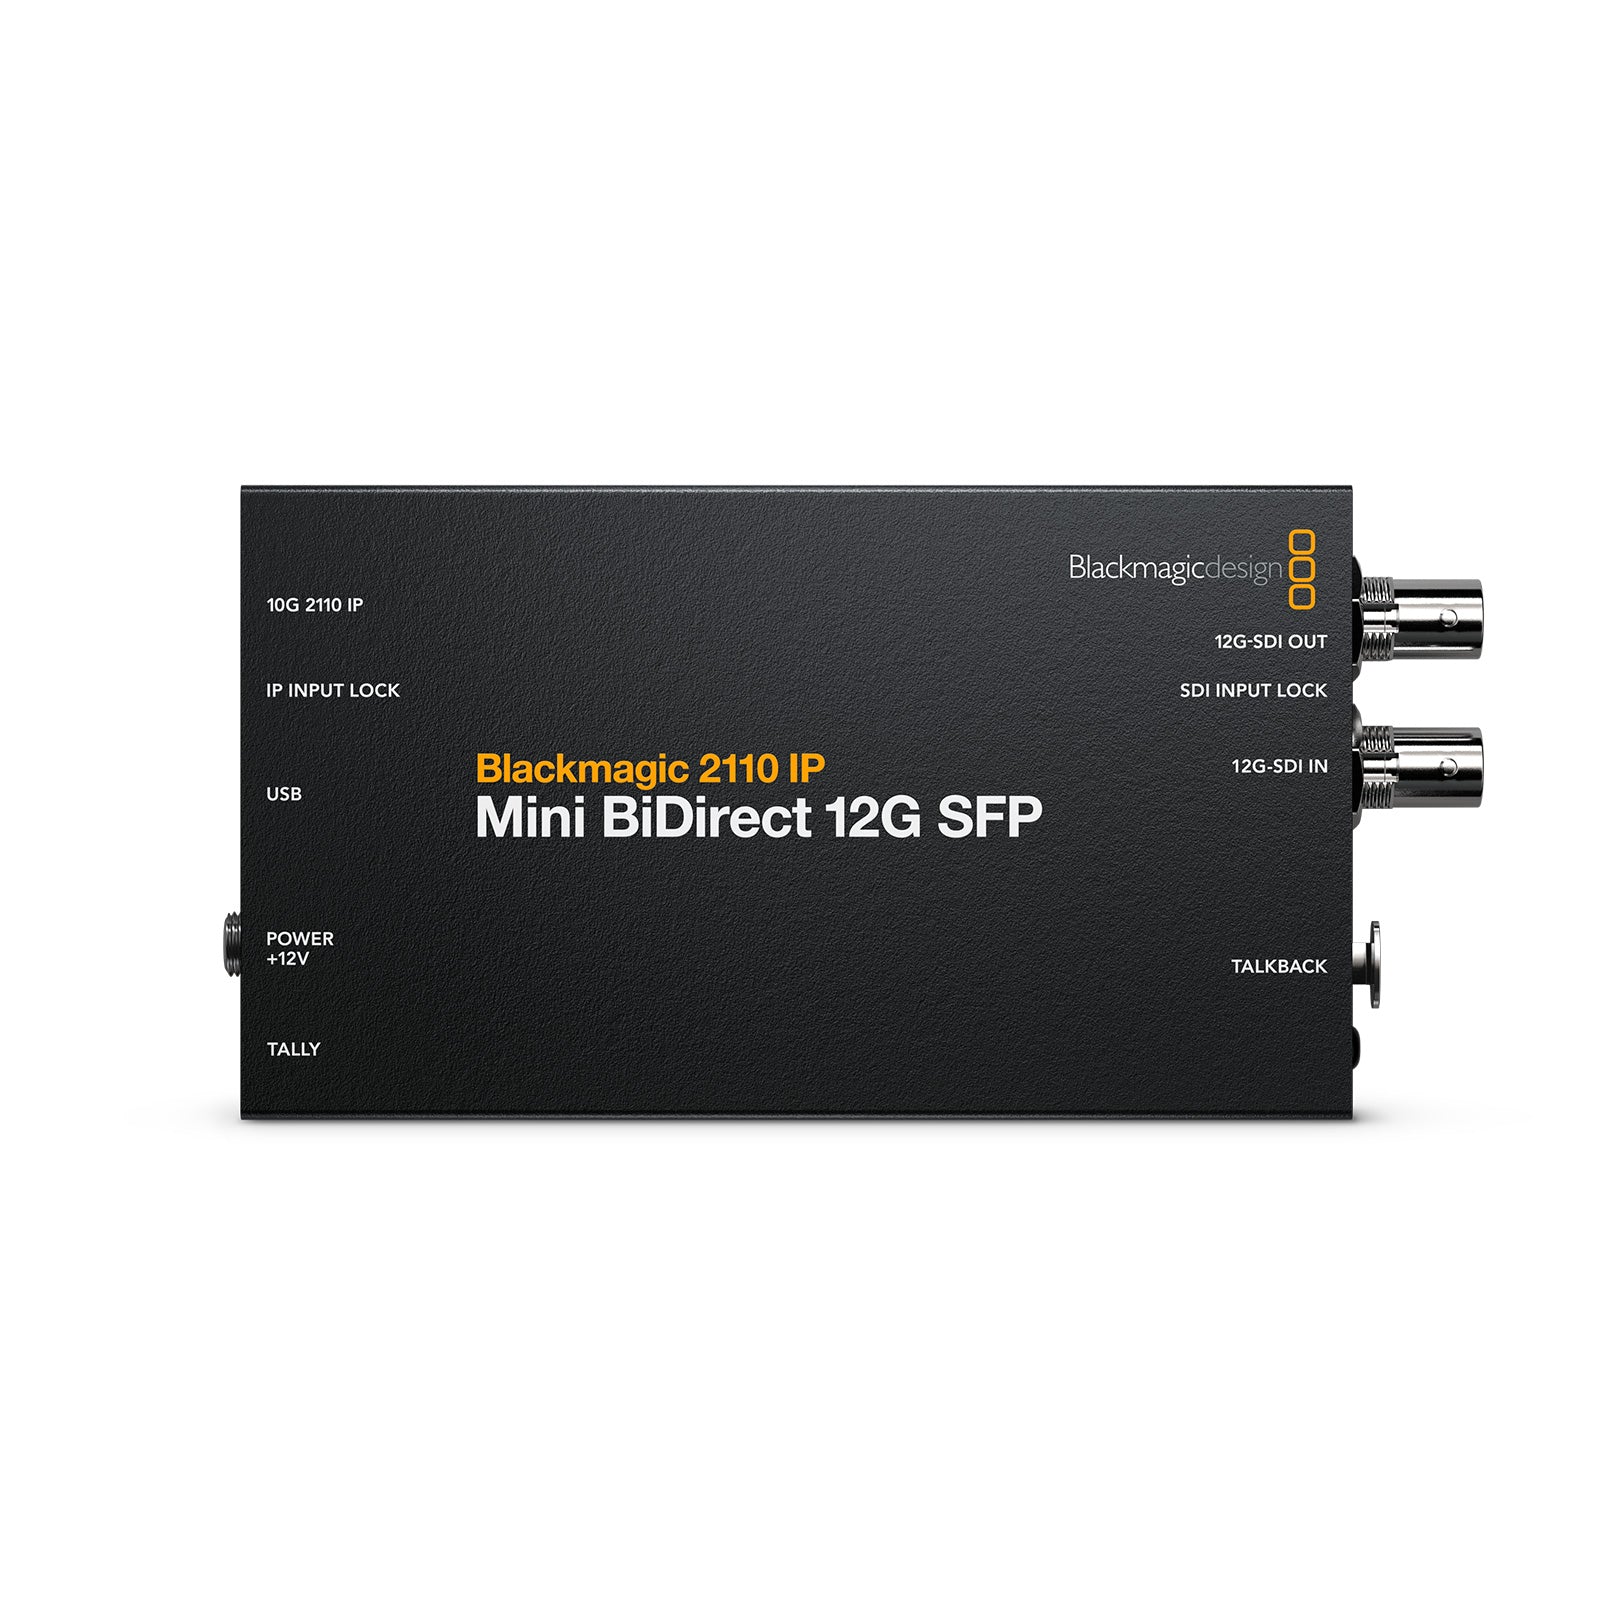 Blackmagic Design(ブラックマジックデザイン) コンバーター Blackmagic 2110 IP Mini BiDirect 12G SFP CONVNVIPF/IP/12GSFP